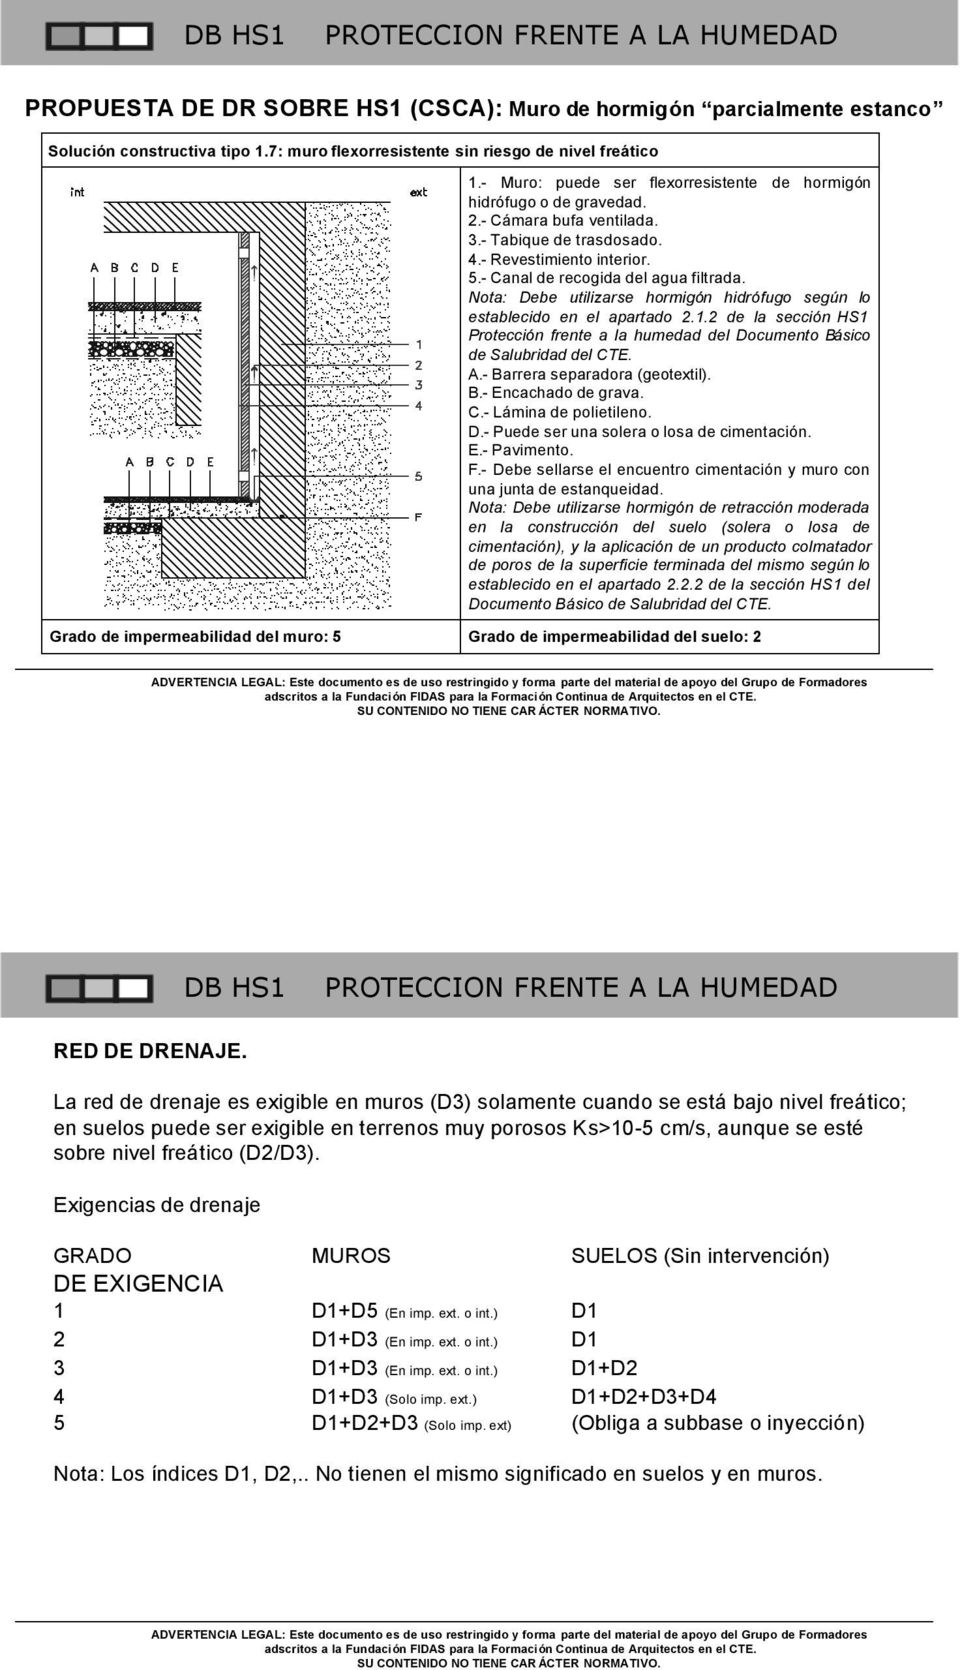 Nota: Debe utilizarse hormigón hidrófugo según lo establecido en el apartado 2.1.2 de la sección HS1 Protección frente a la humedad del Documento Básico de Salubridad del CTE. A.